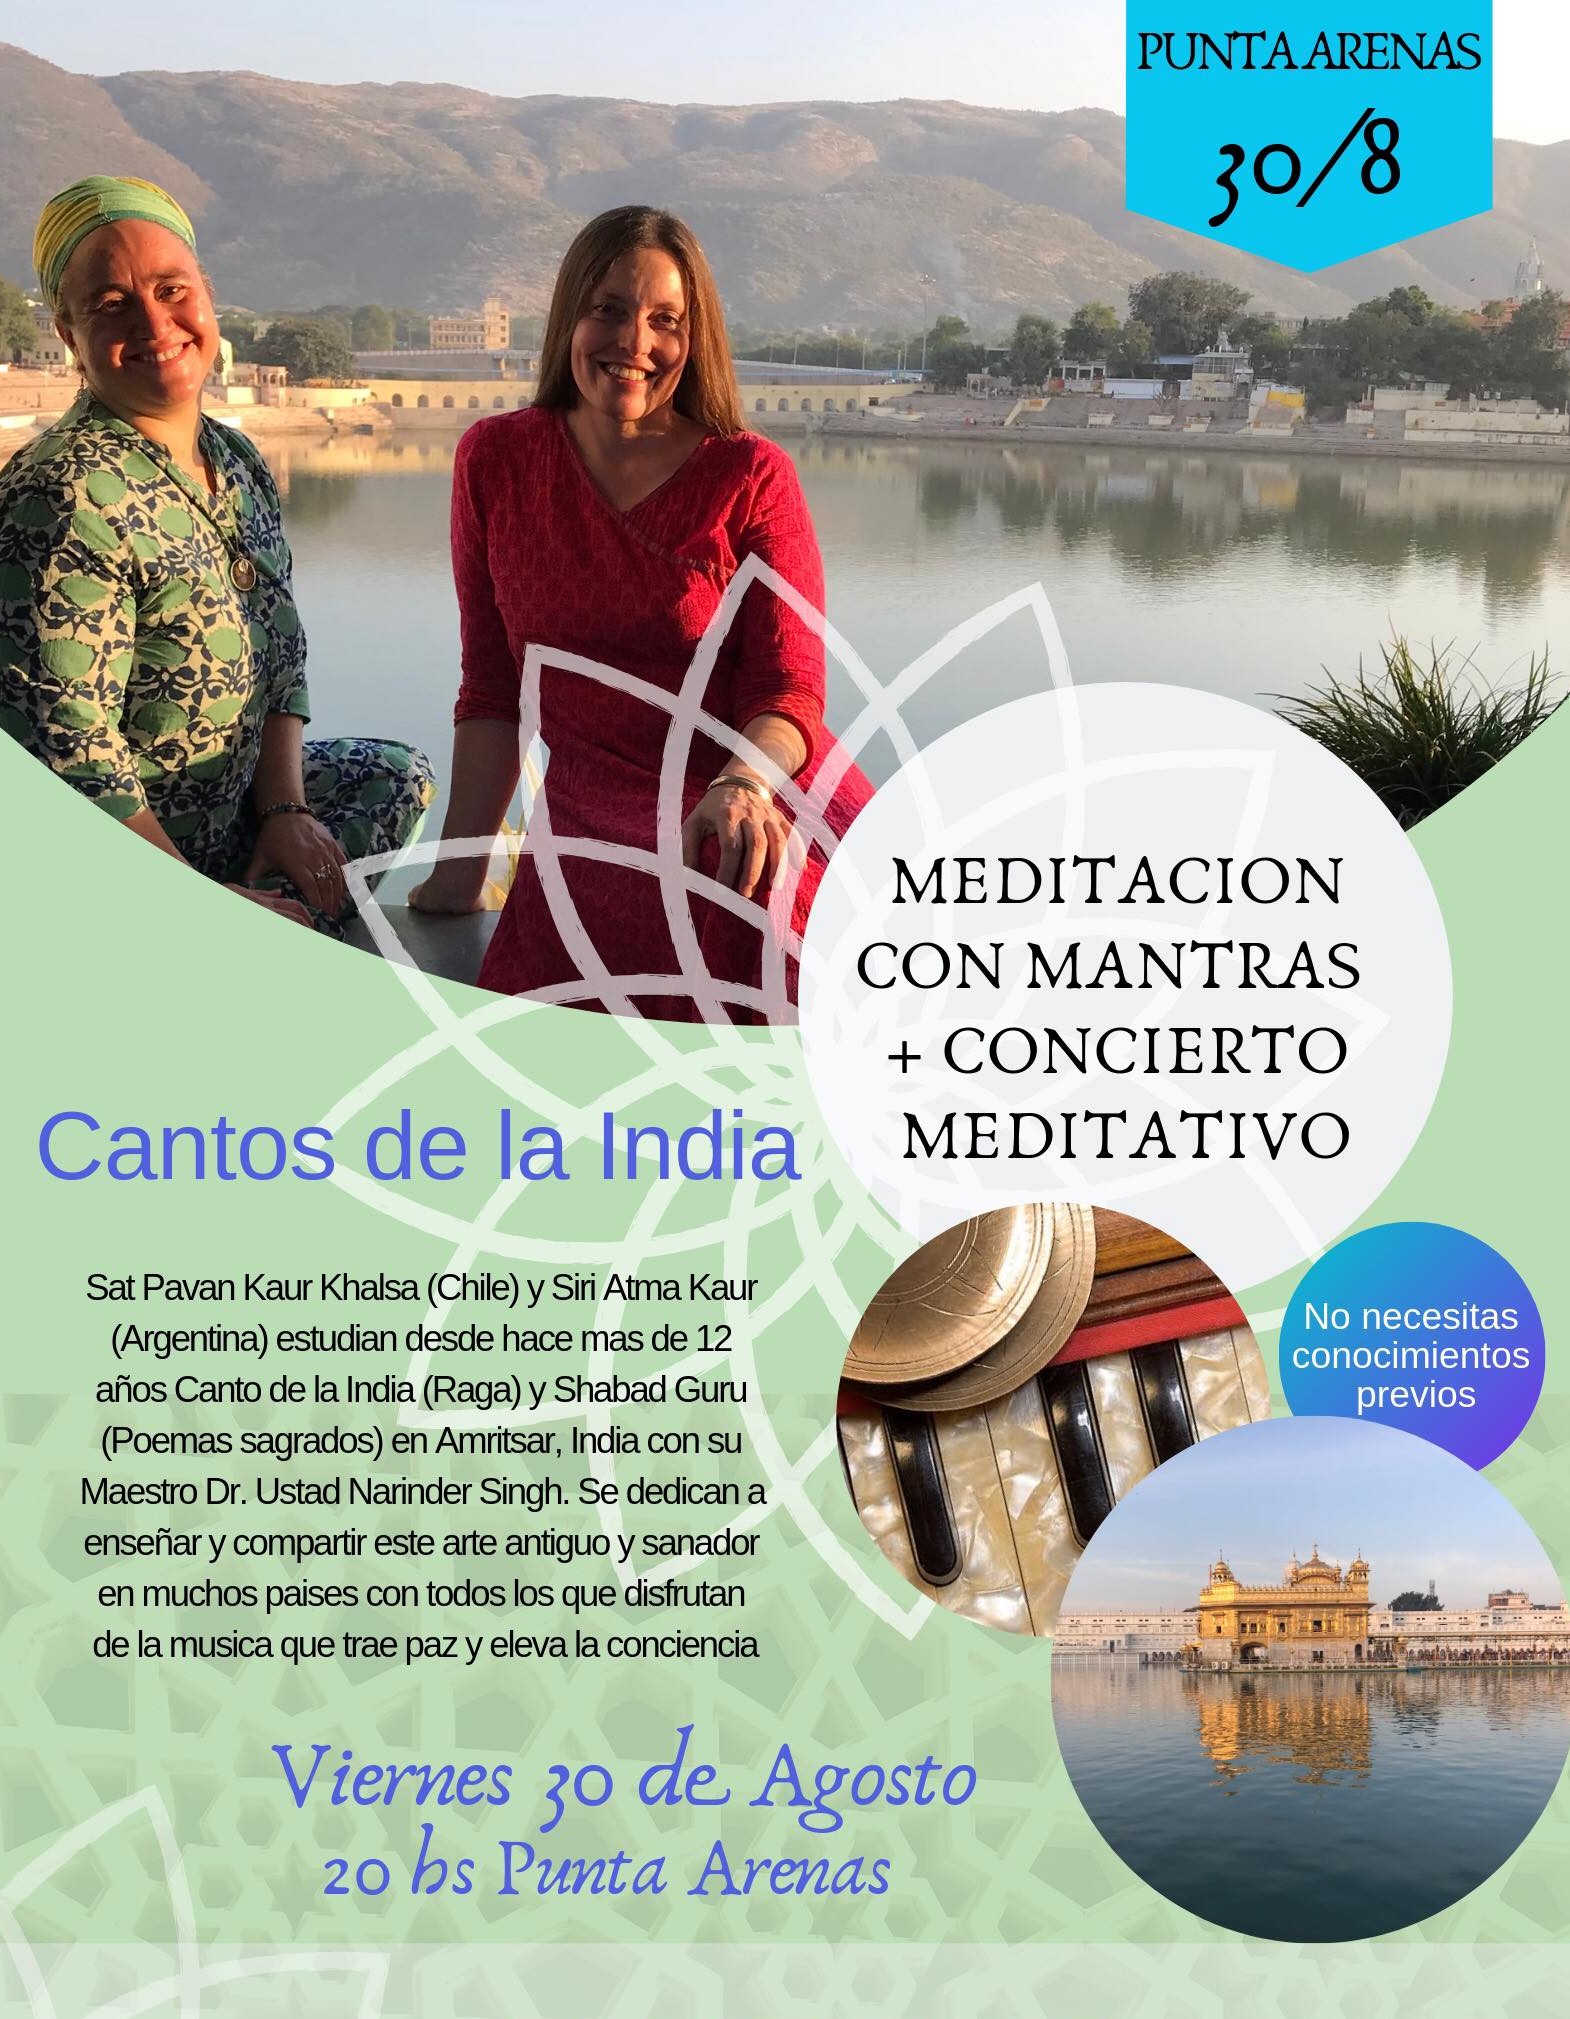 Concierto de Mantras: desde la India a Punta Arenas